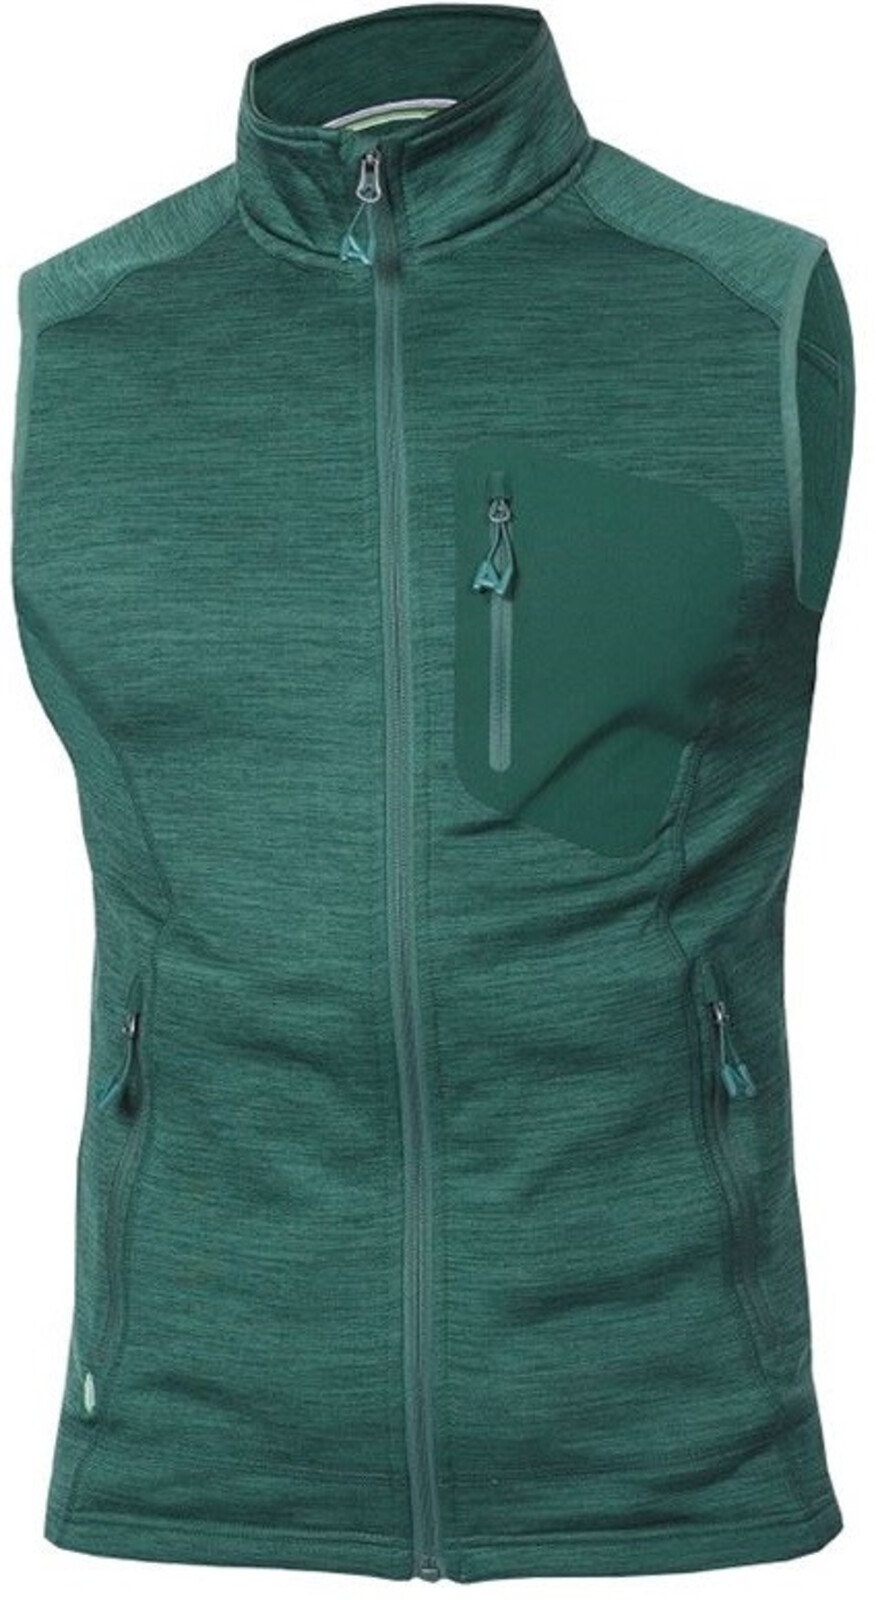 Pánska funkčná vesta Ardon Breeffidry - veľkosť: M, farba: zelená